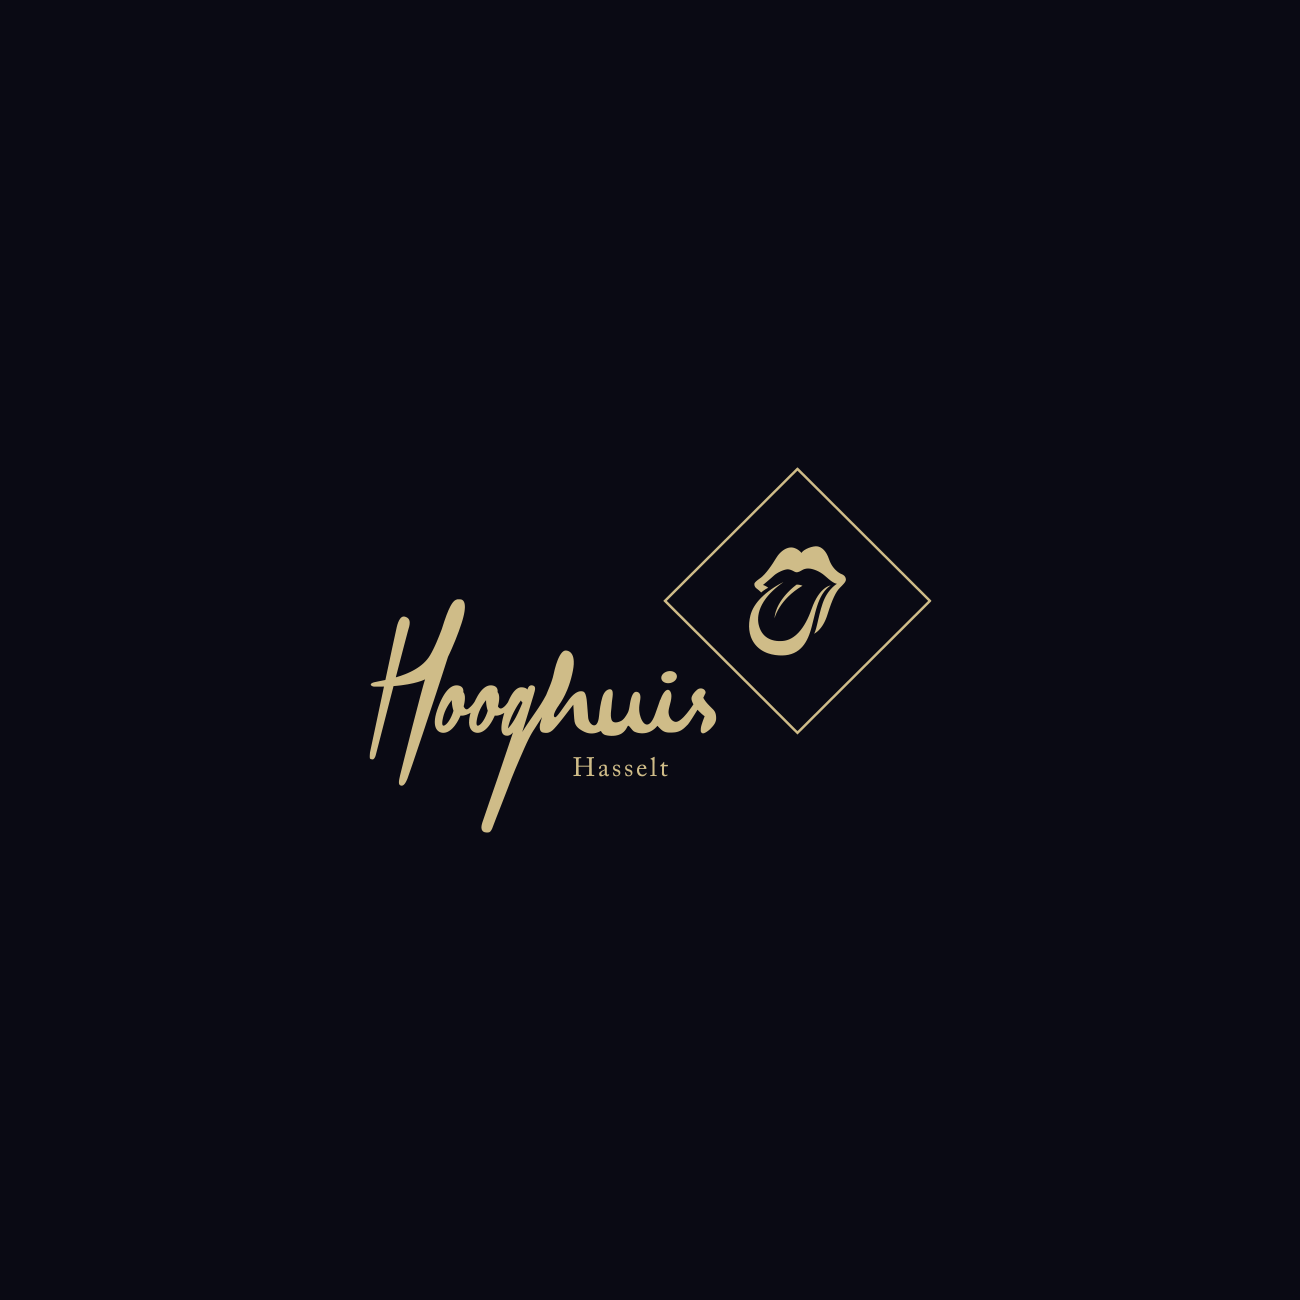 Hooghuis - Logo